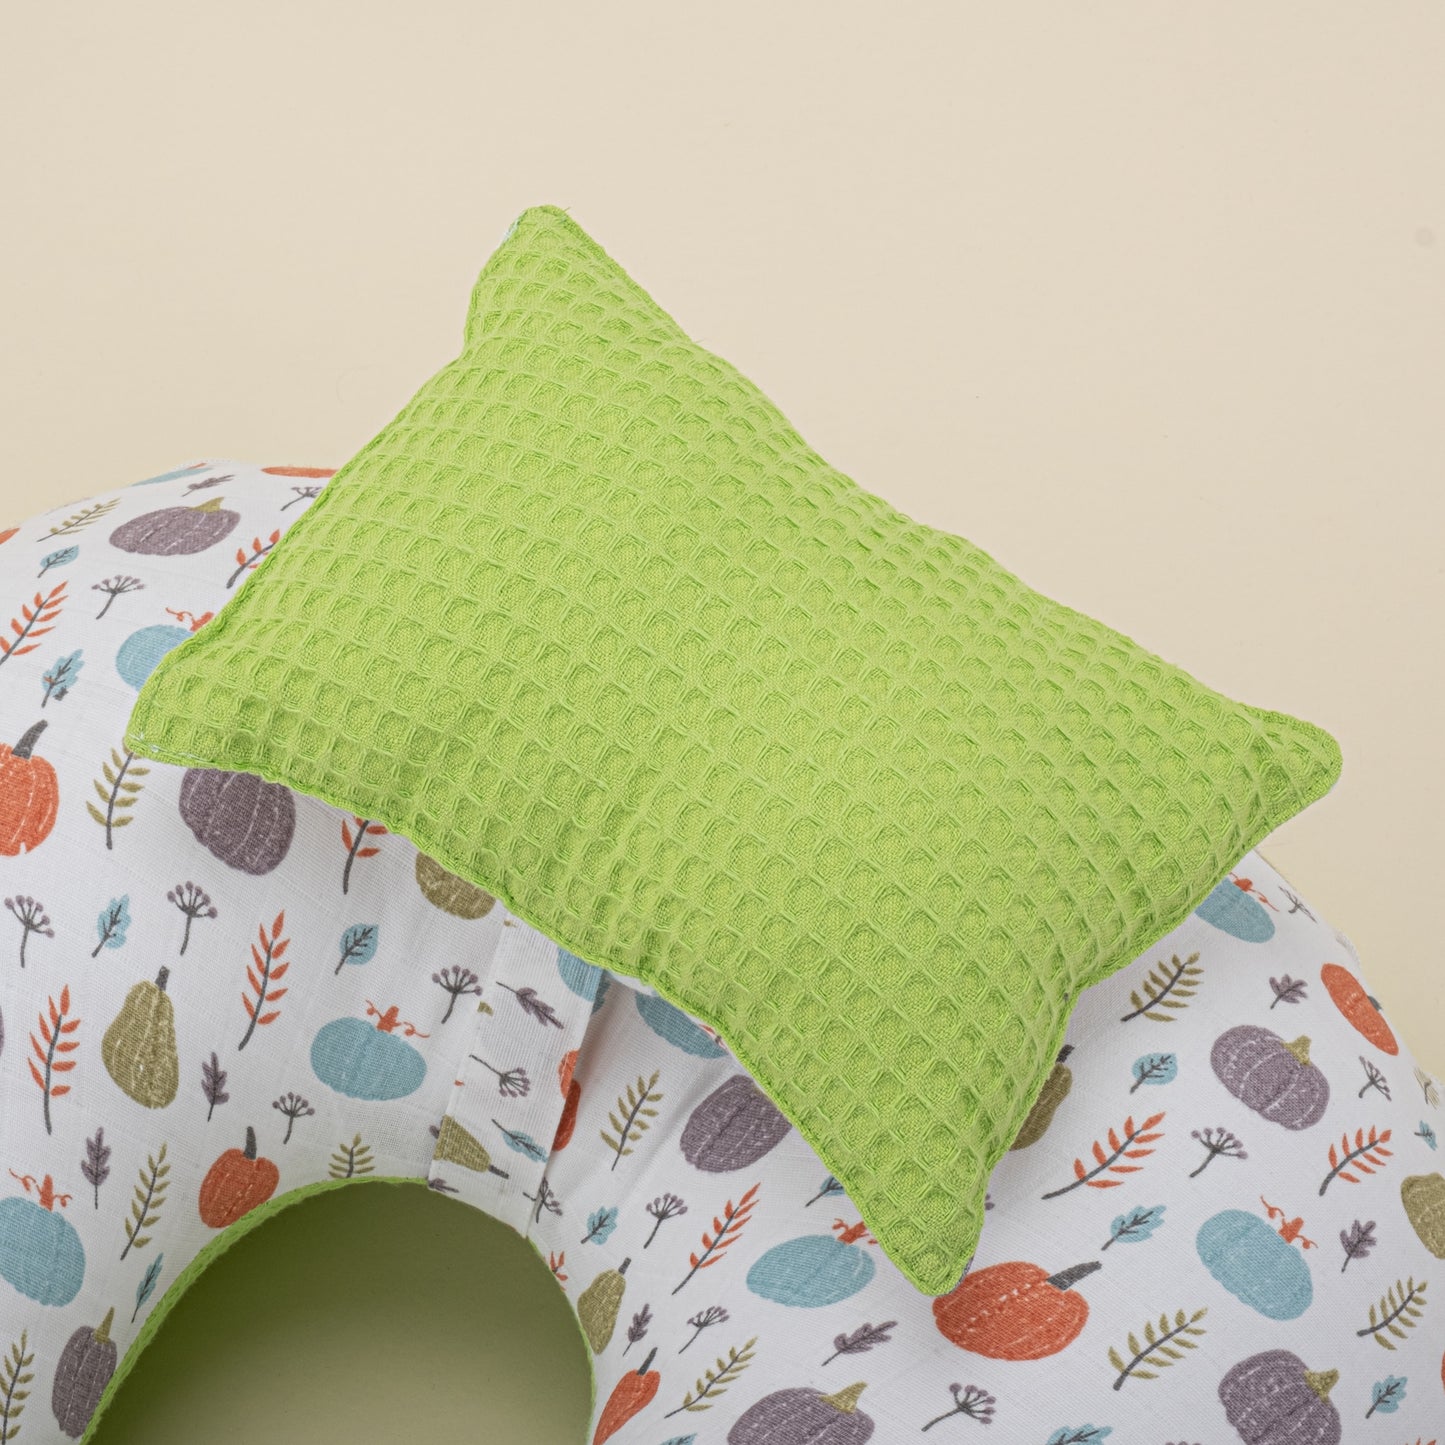 Breastfeeding Pillow - Pistachio Green Honeycomb - Green Pumpkin